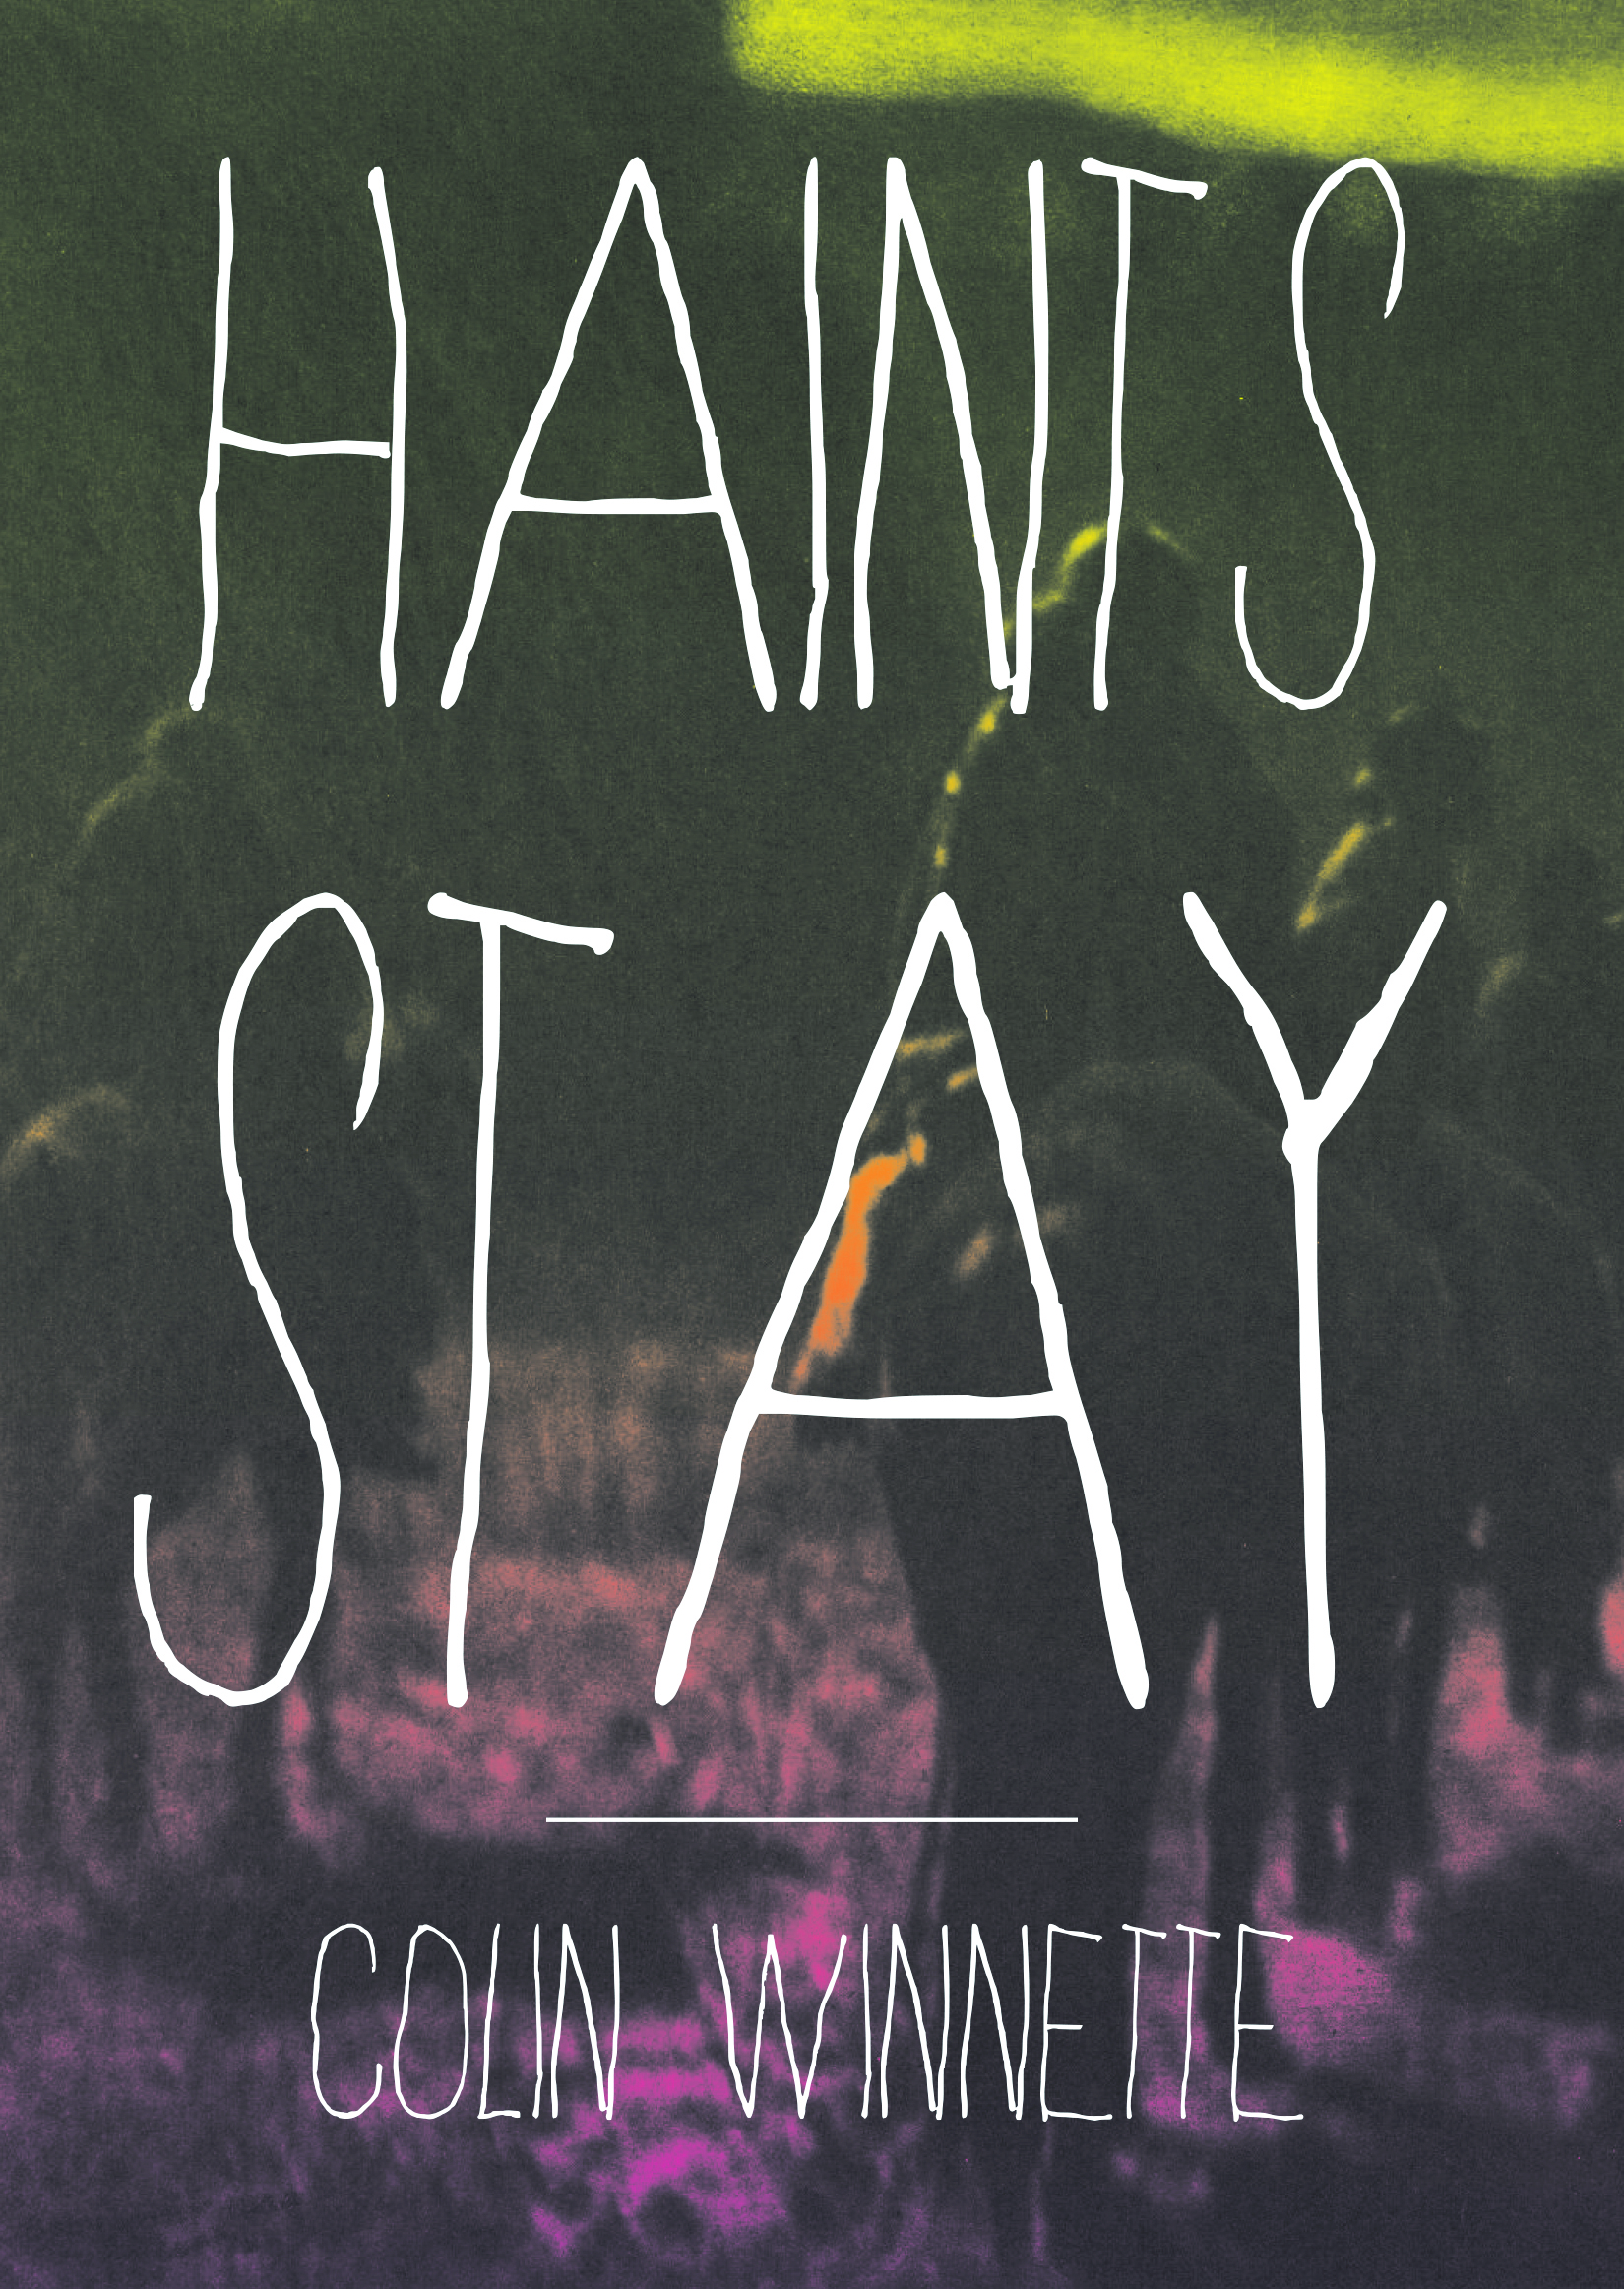 WINNETTE-Haints-Stay-cov